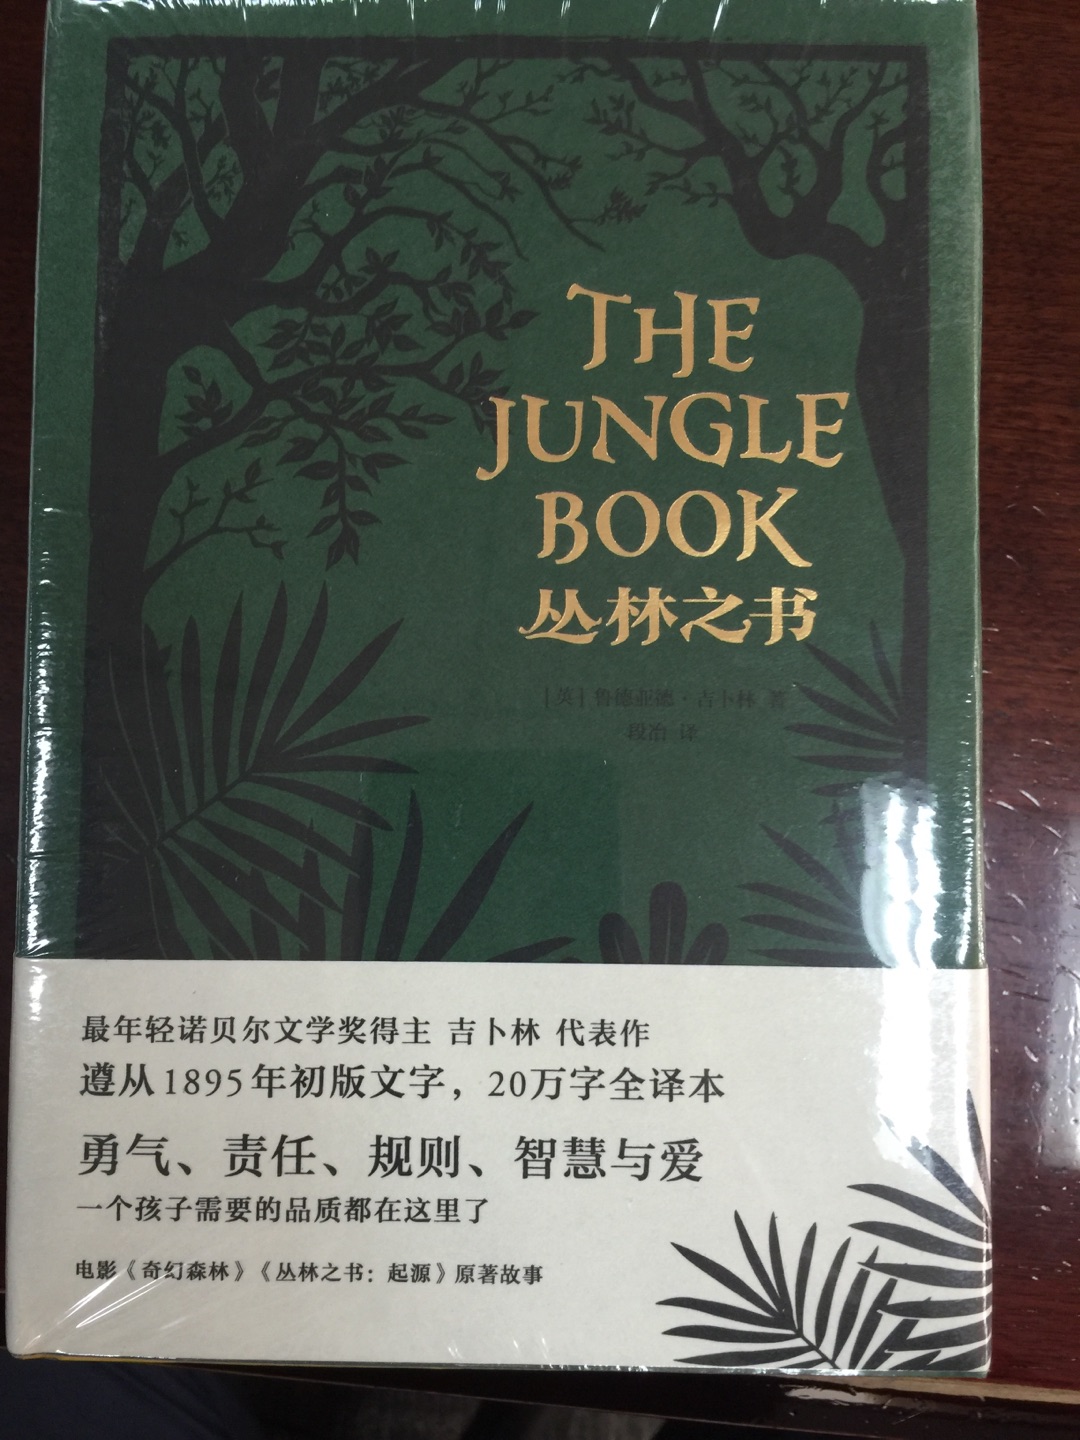 不错的丛林之书译本，值得入手